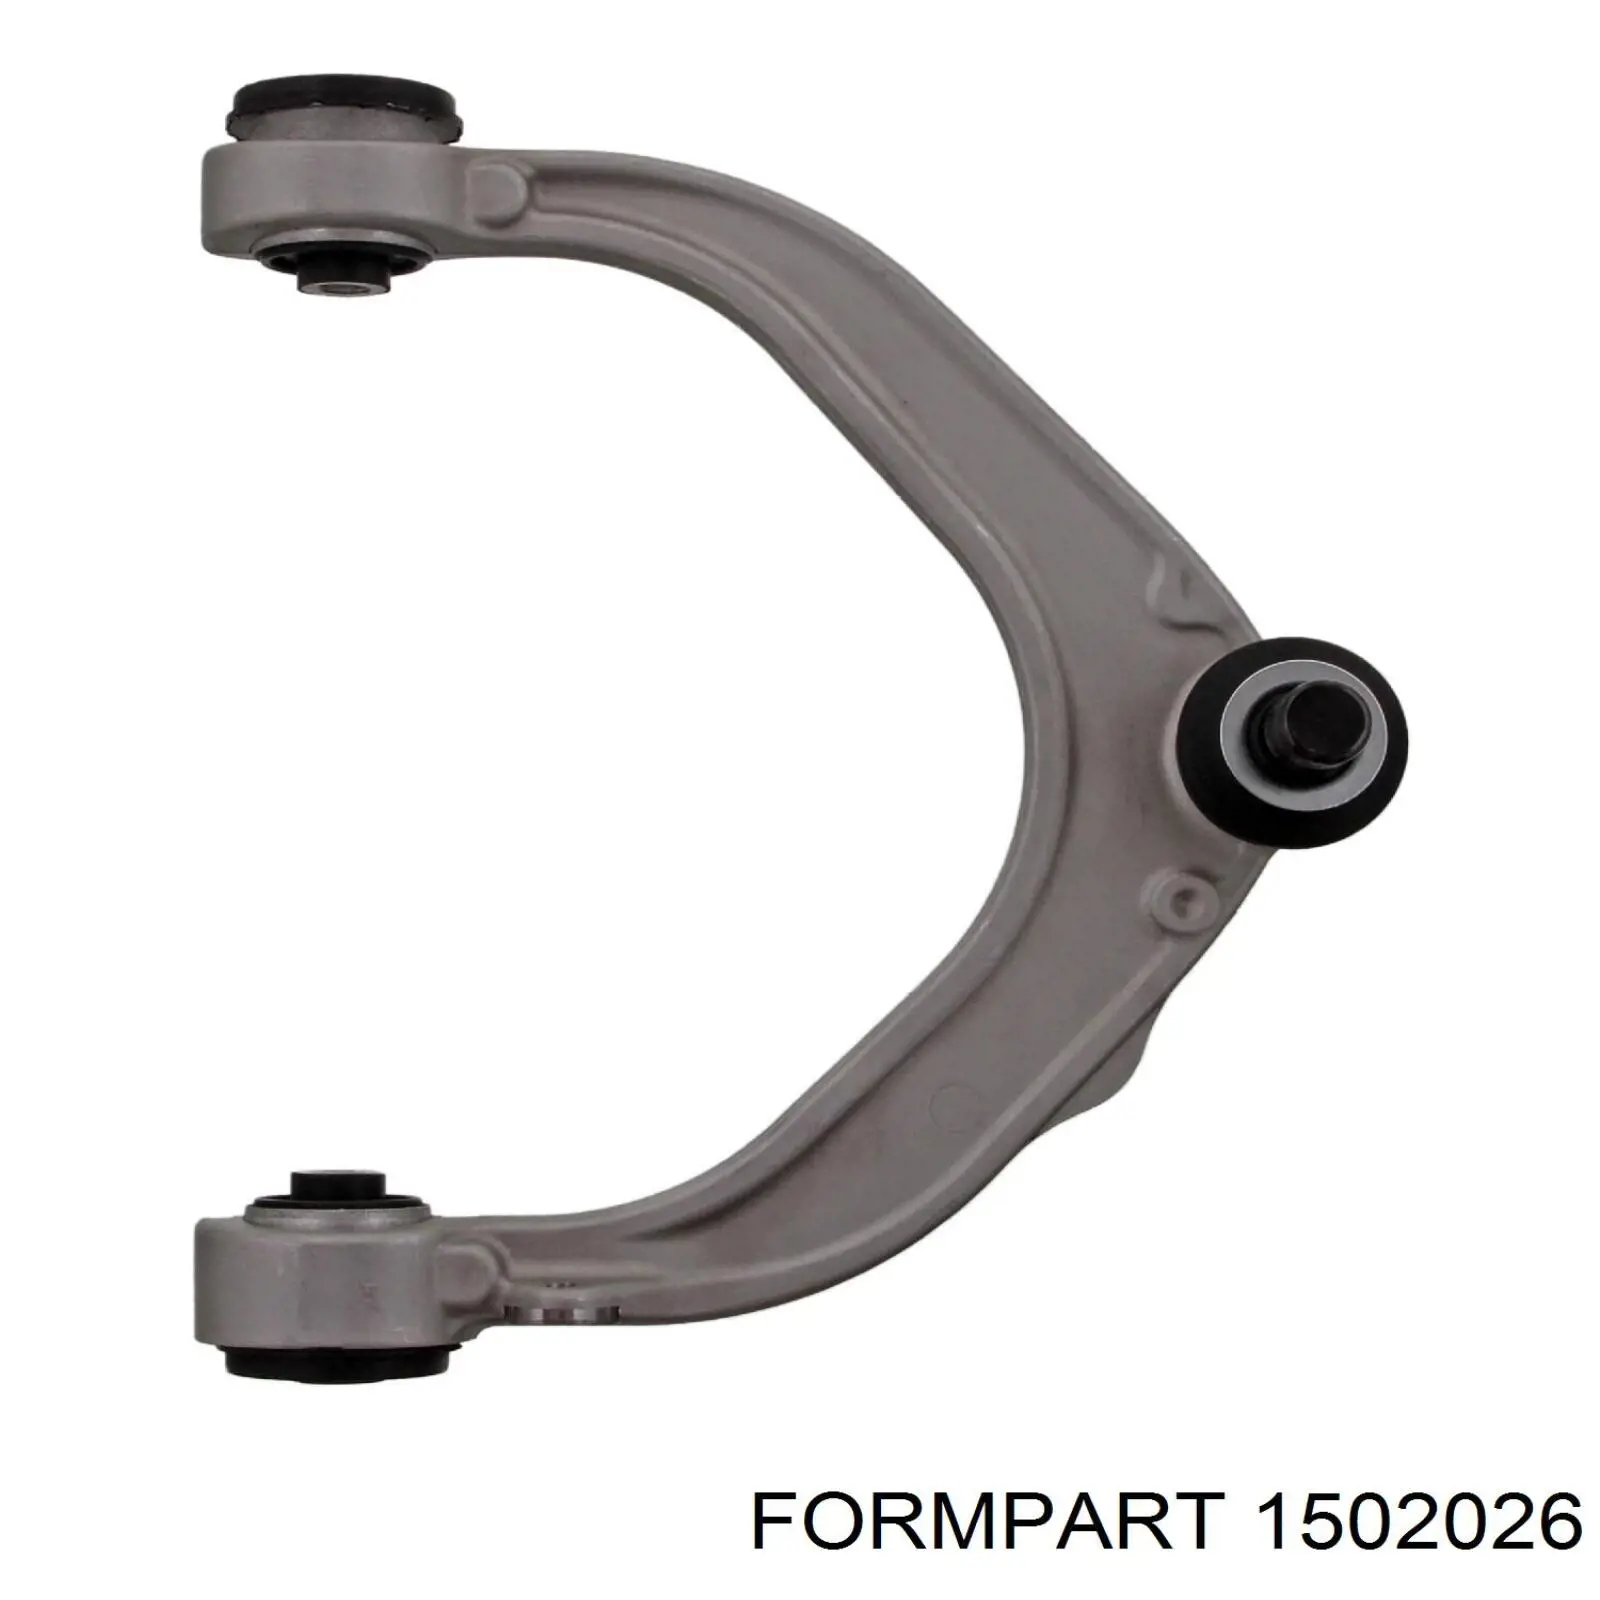 1502026 Formpart/Otoform rótula barra de acoplamiento exterior